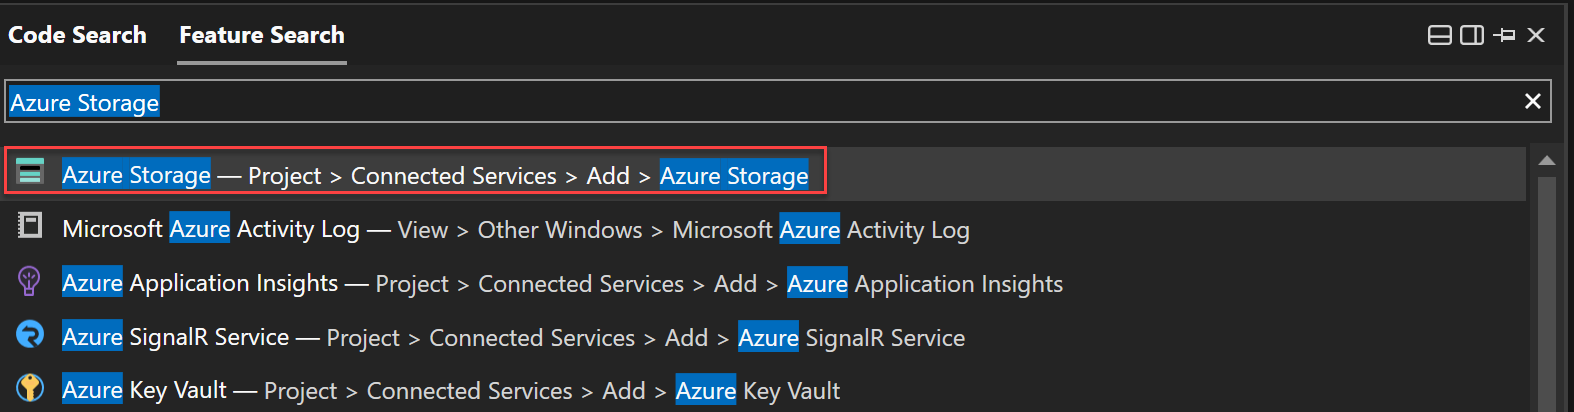 Captura de tela do uso da Pesquisa de Recursos para pesquisar o Armazenamento do Microsoft Azure.